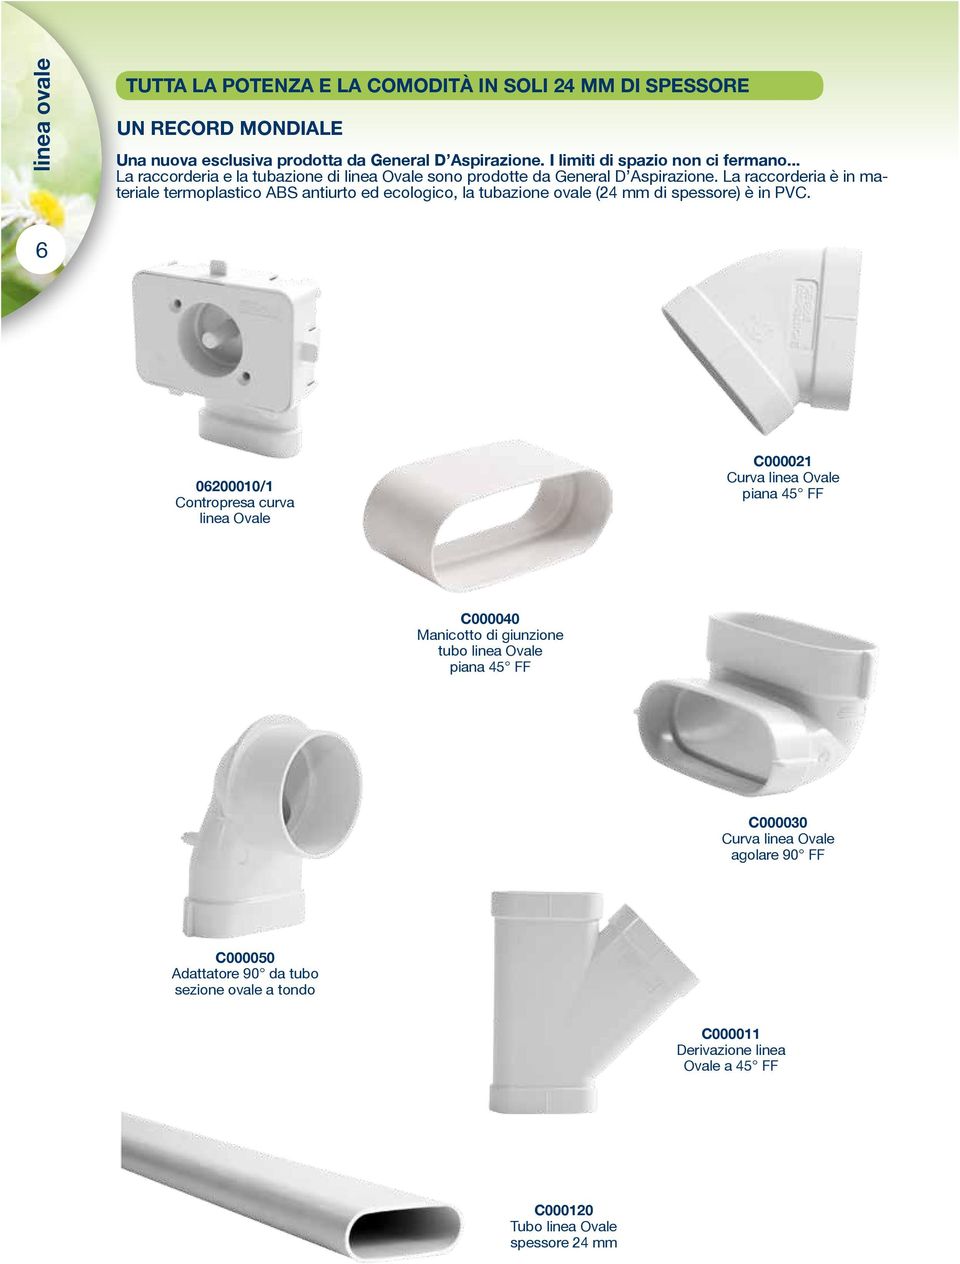 La raccorderia è in materiale termoplastico ABS antiurto ed ecologico, la tubazione ovale (24 mm di spessore) è in PVC.